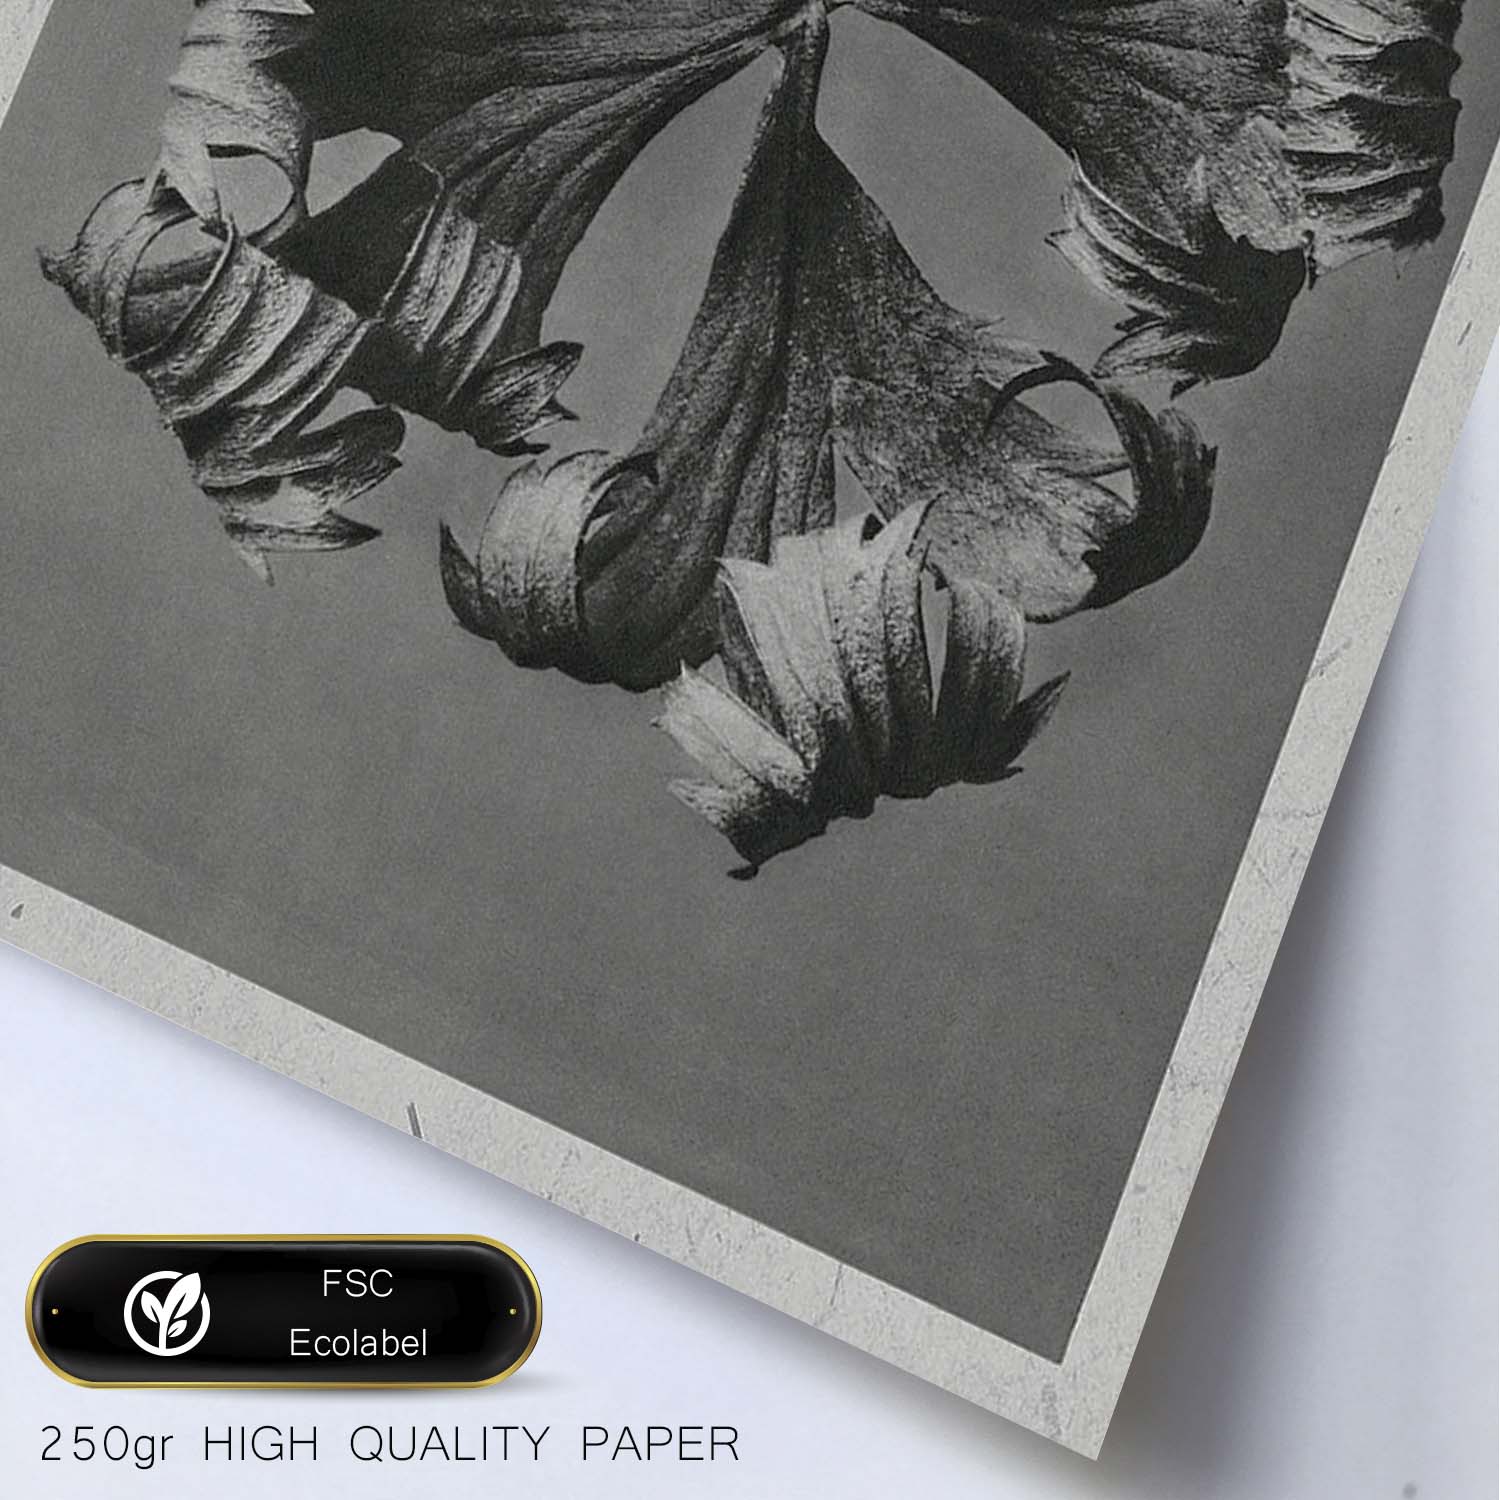 Lámina Planta blanco y negro 55. Pósters con ilustraciones de flores y plantas en tonos grises.-Artwork-Nacnic-Nacnic Estudio SL